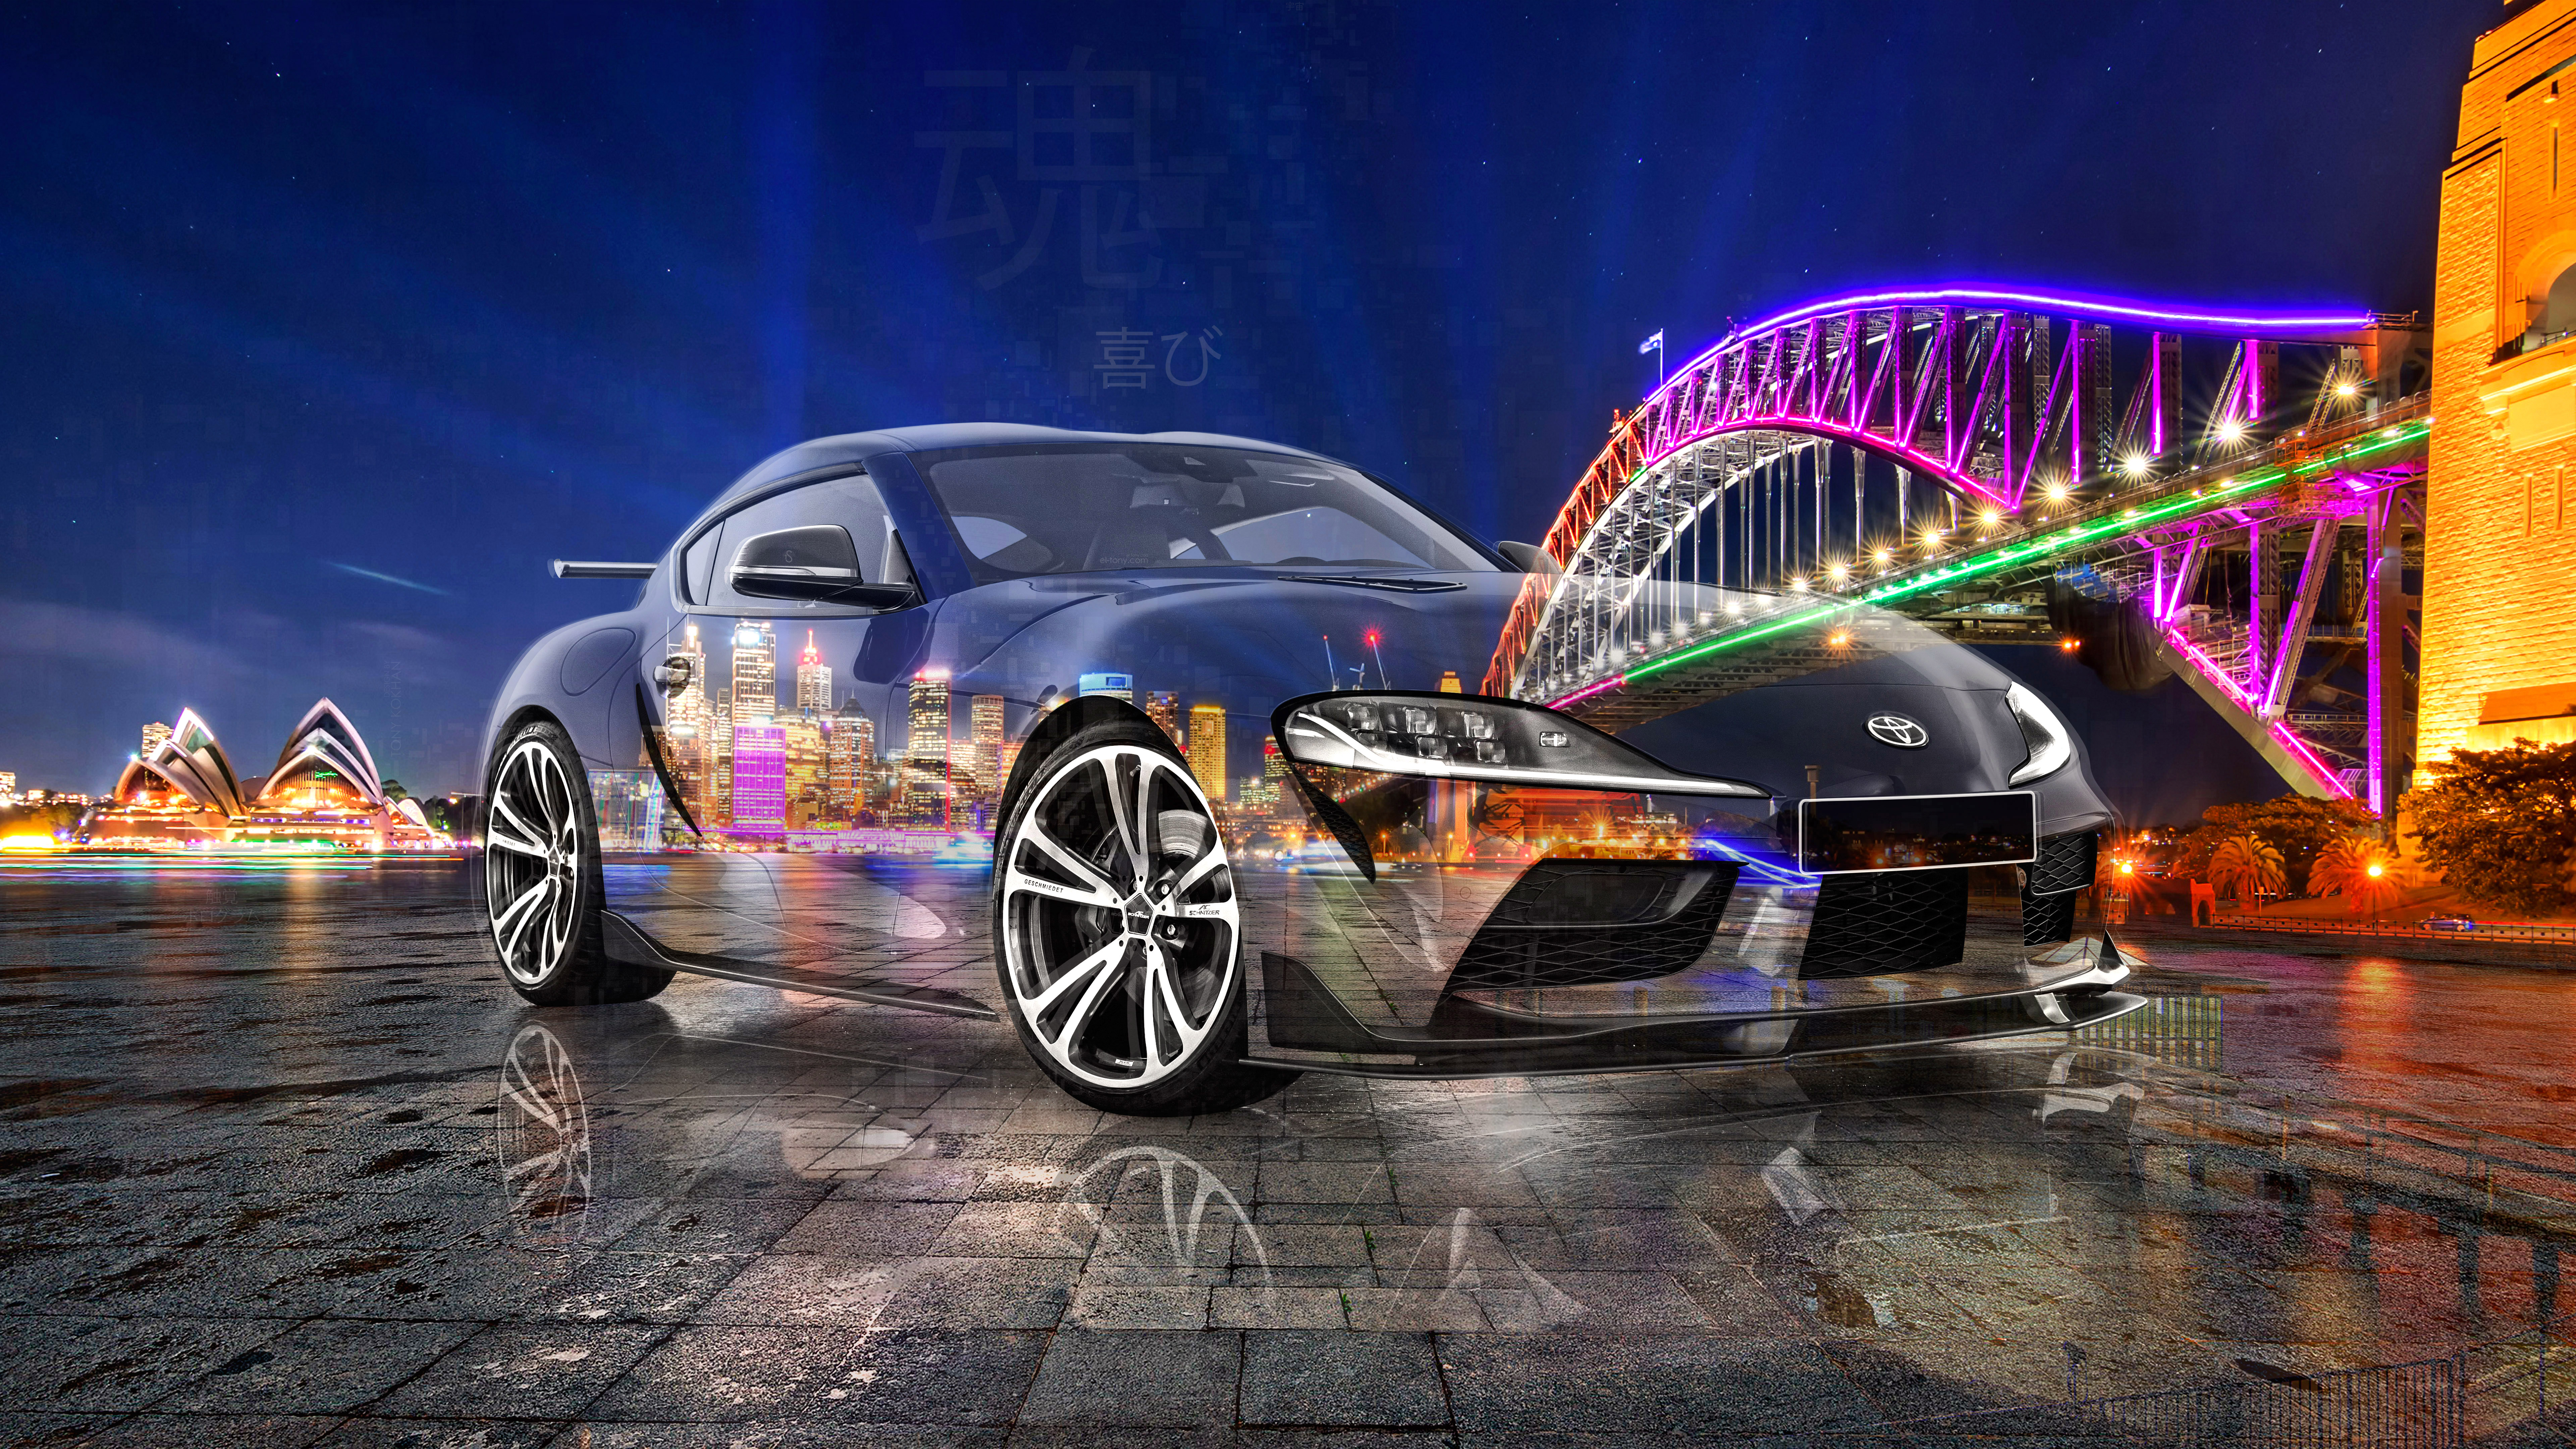 Toyota-Supra-A90-JDM-Tuning-Super-Crystal-Joy-Soul-Australia-Sydney-Harbour-Bridge-Night-City-GaGaGa-Car